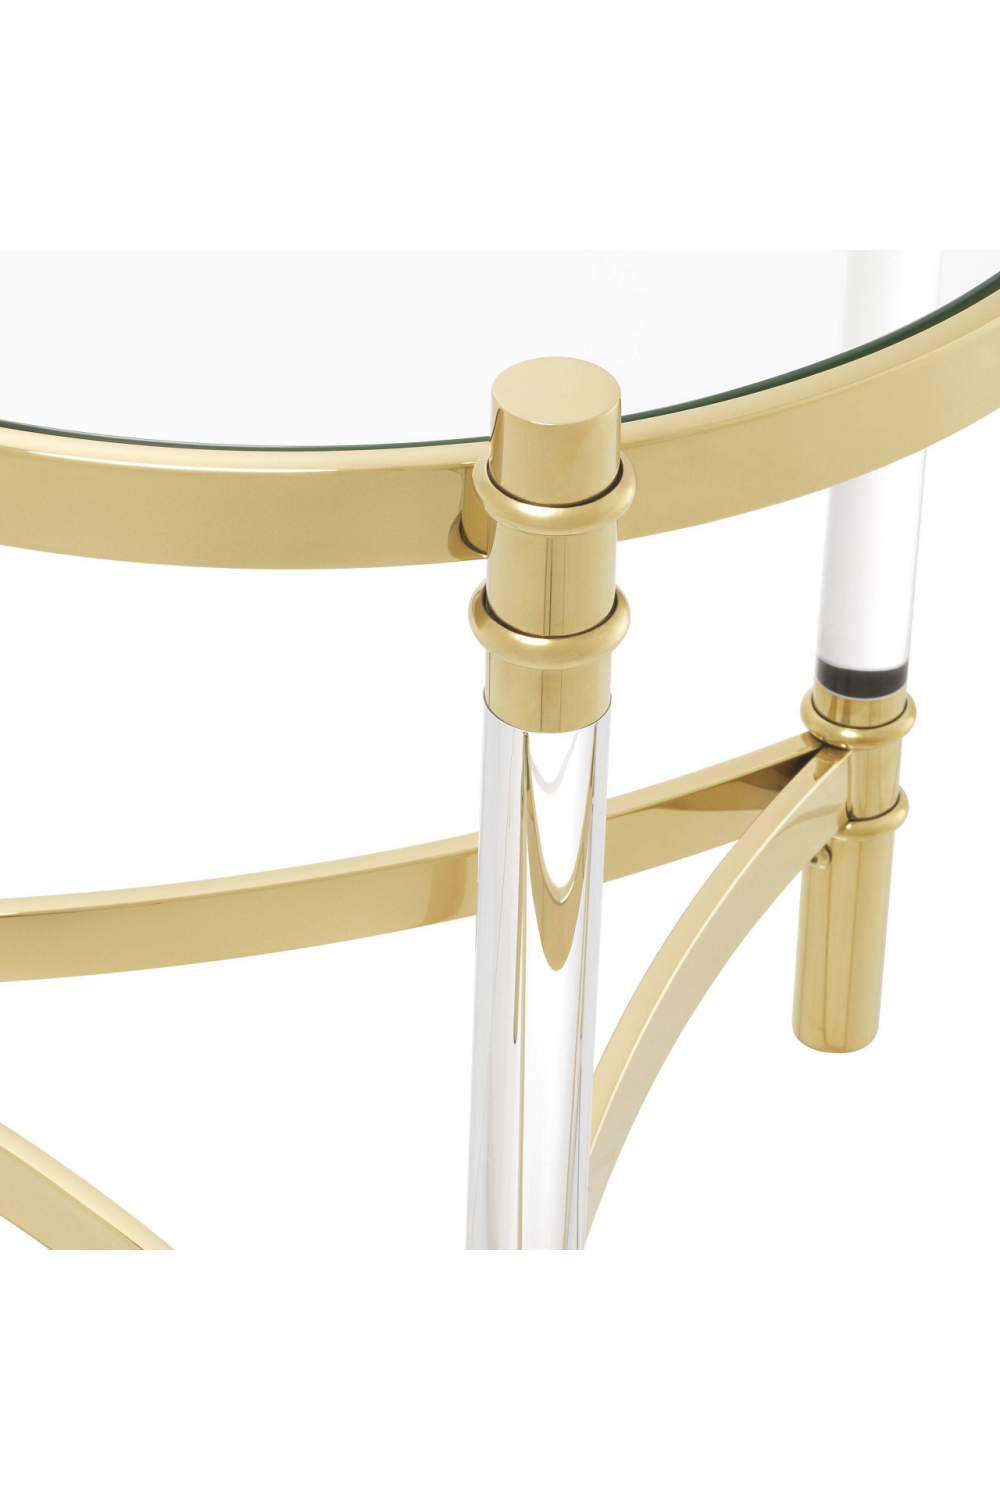 Gold Round Side Table | Eichholtz Trento | OROA